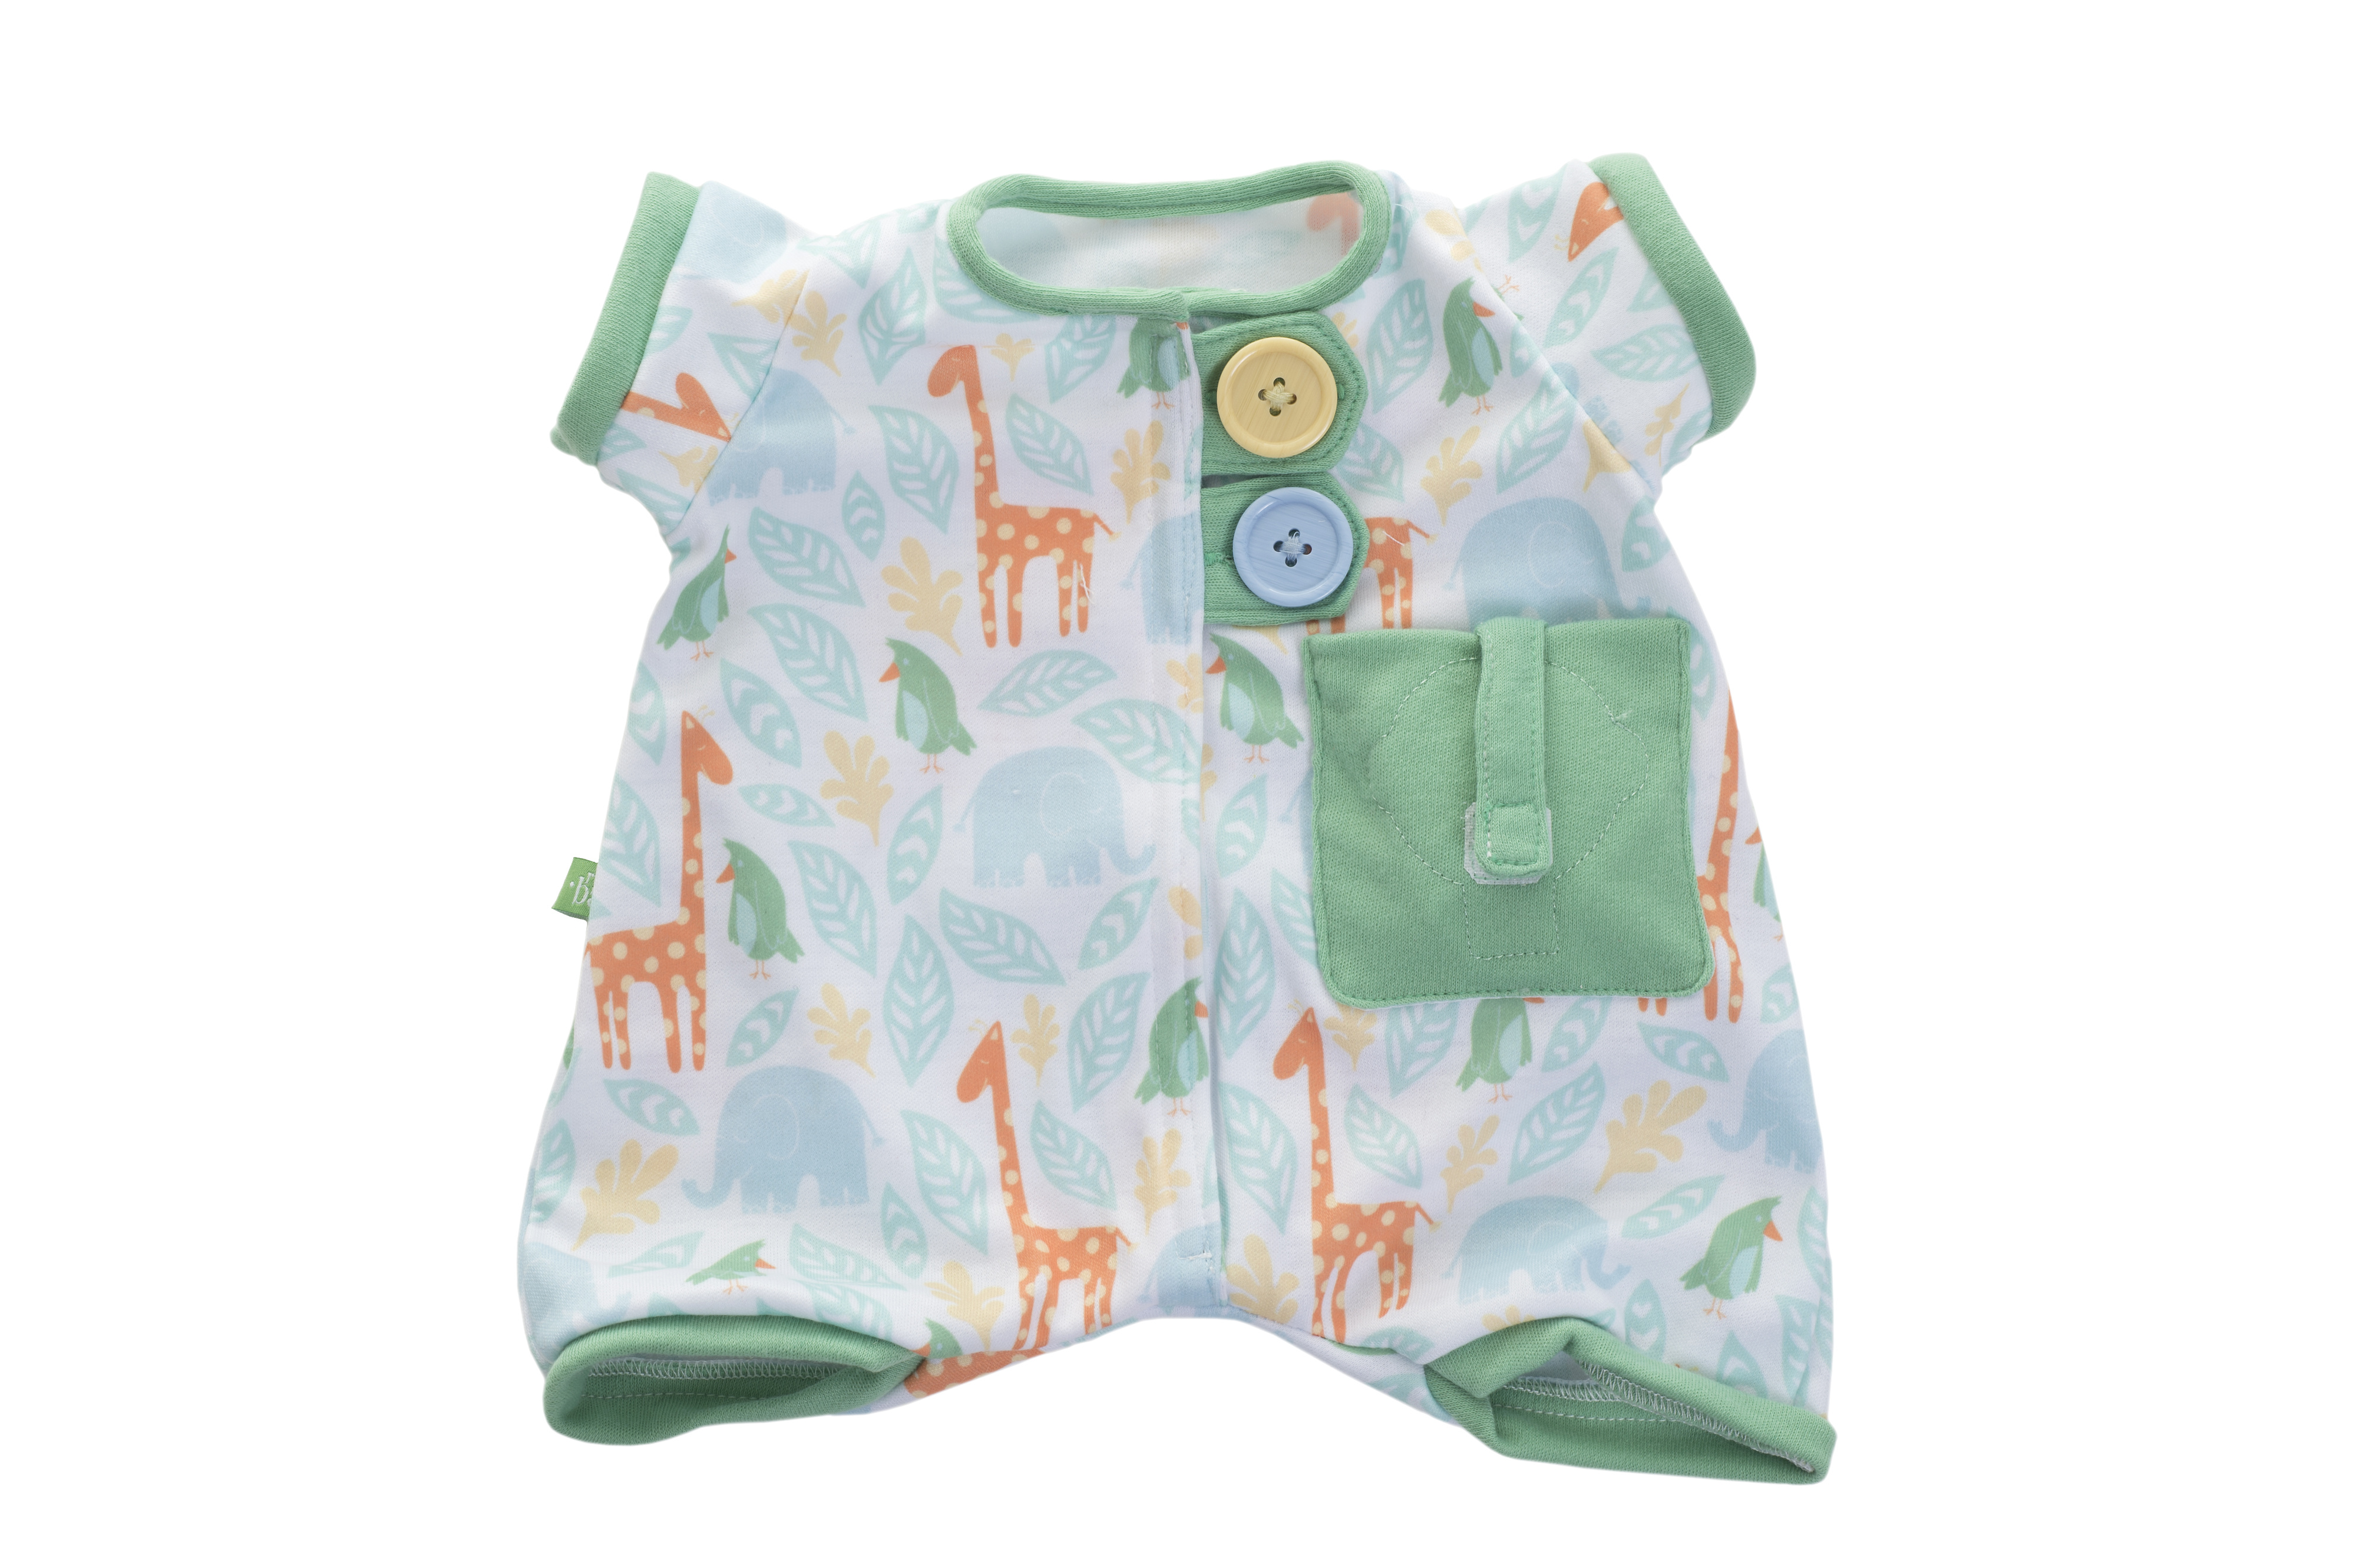 Outlet rubens barn dukkeklær green pajamas baby